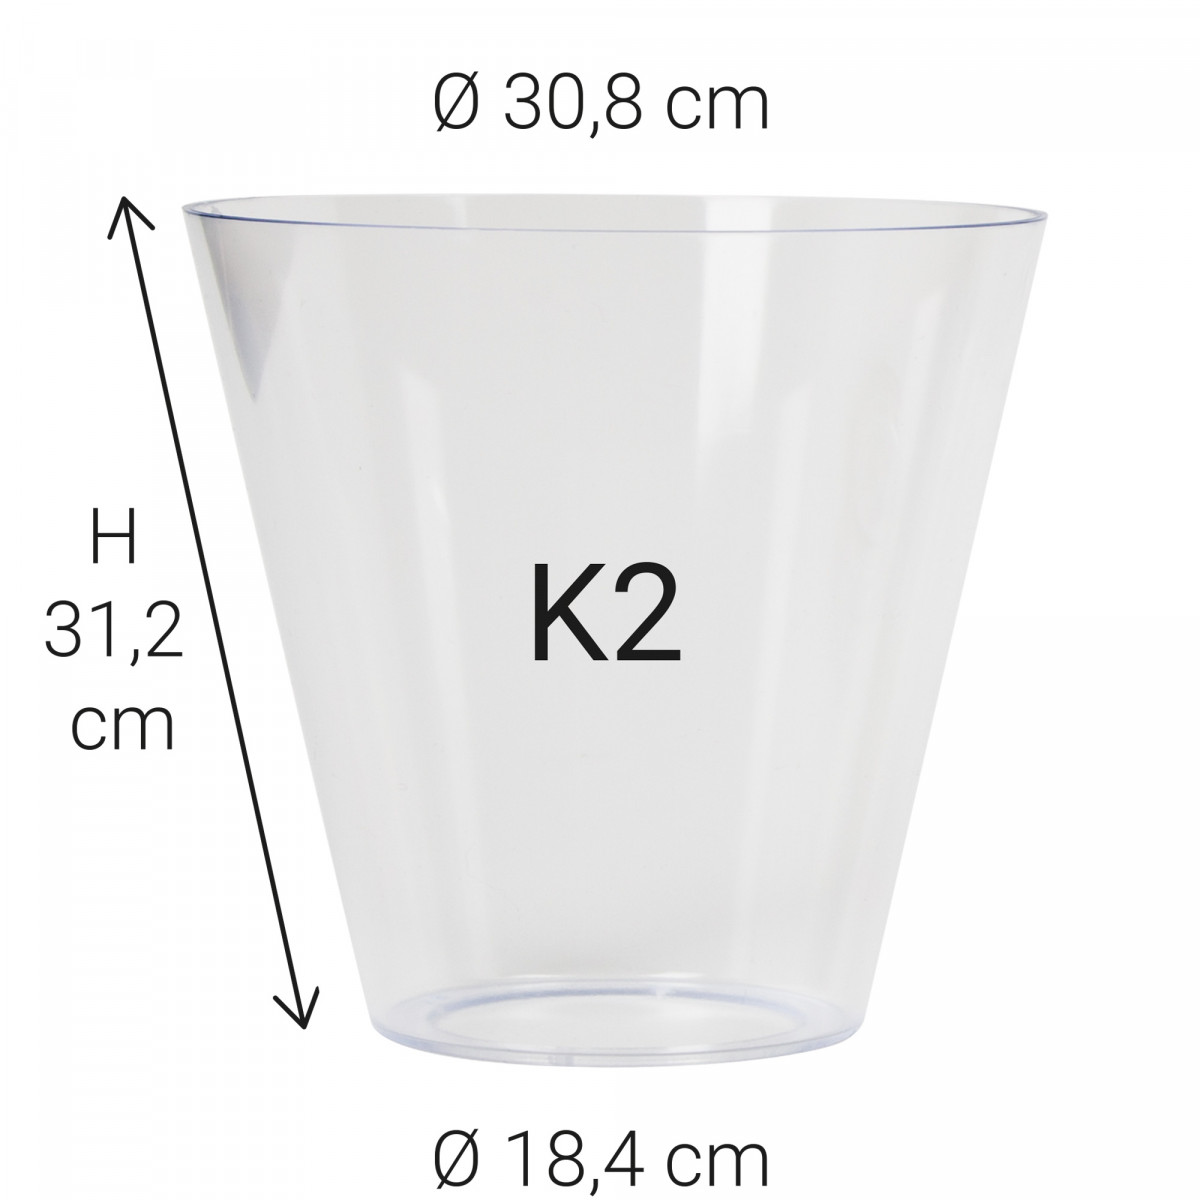 Echt glas K2